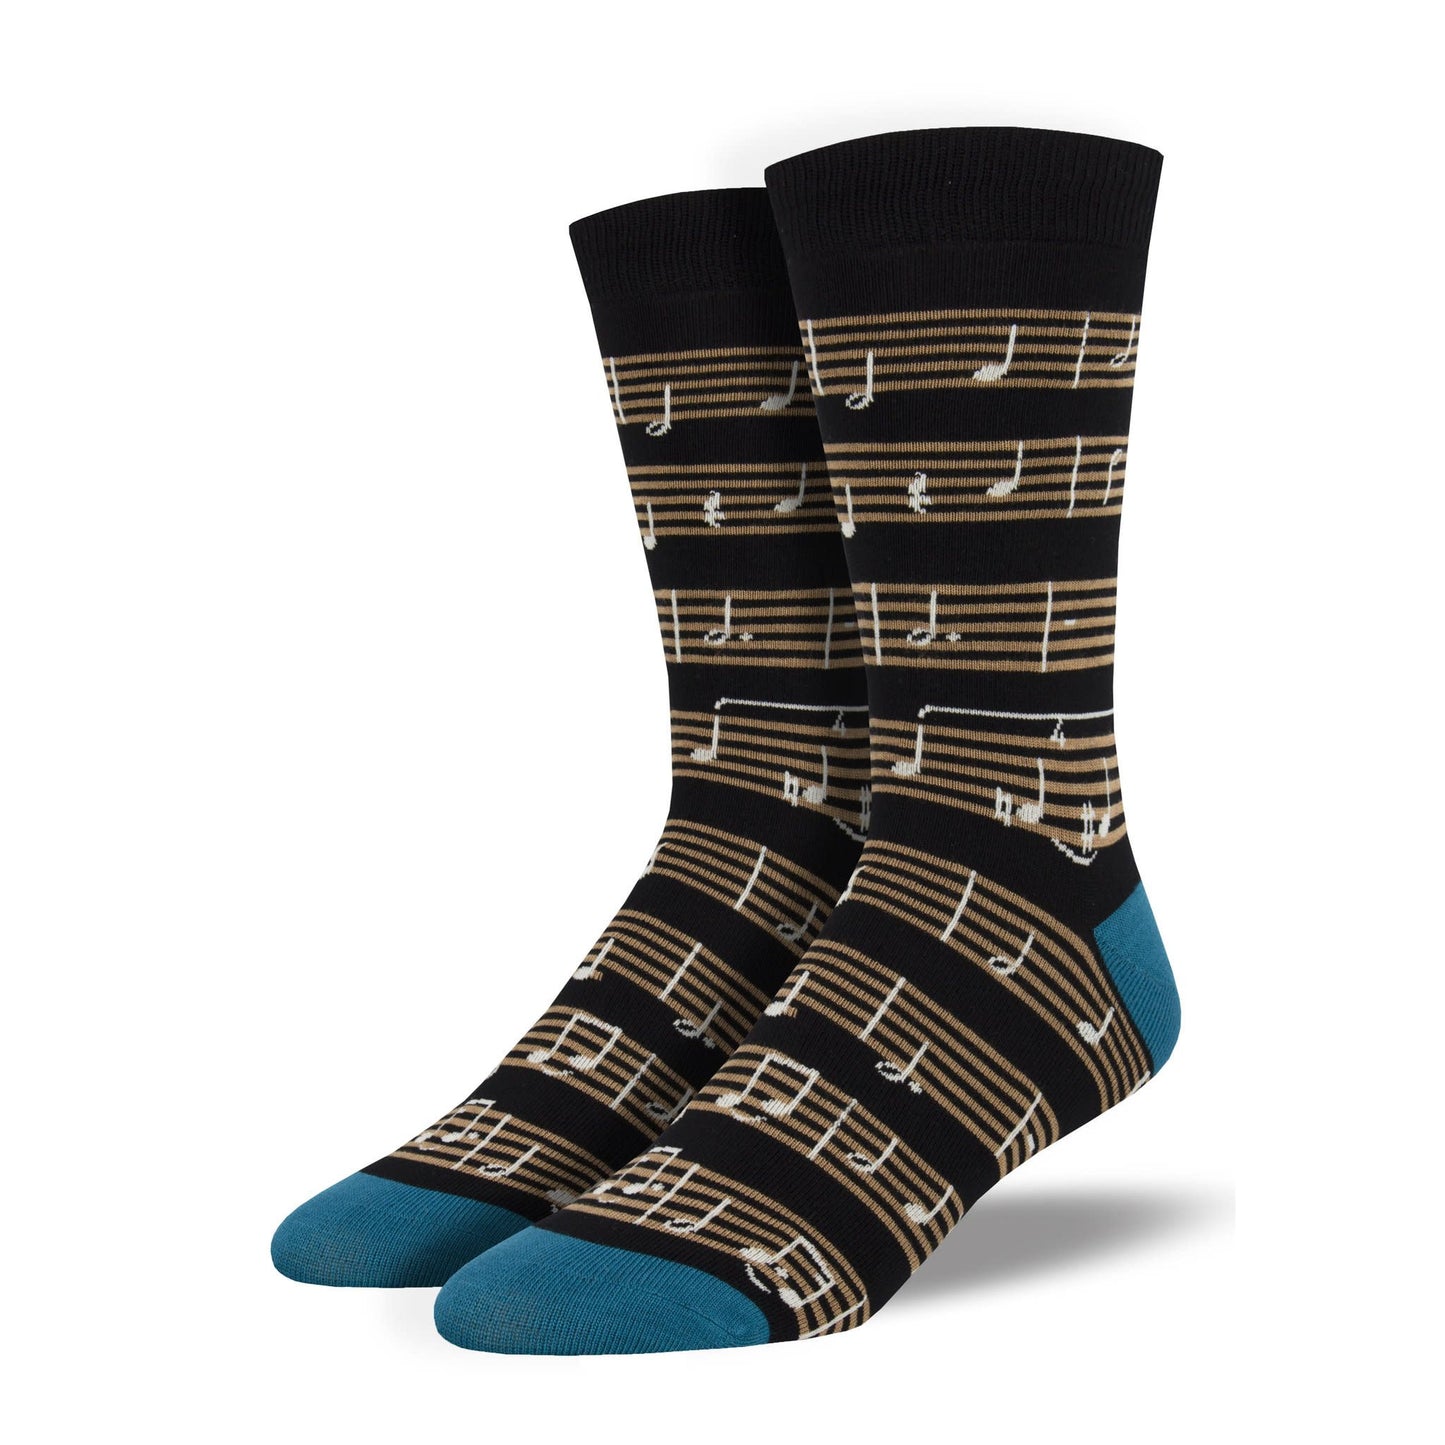 Sheet Music Men's Socks